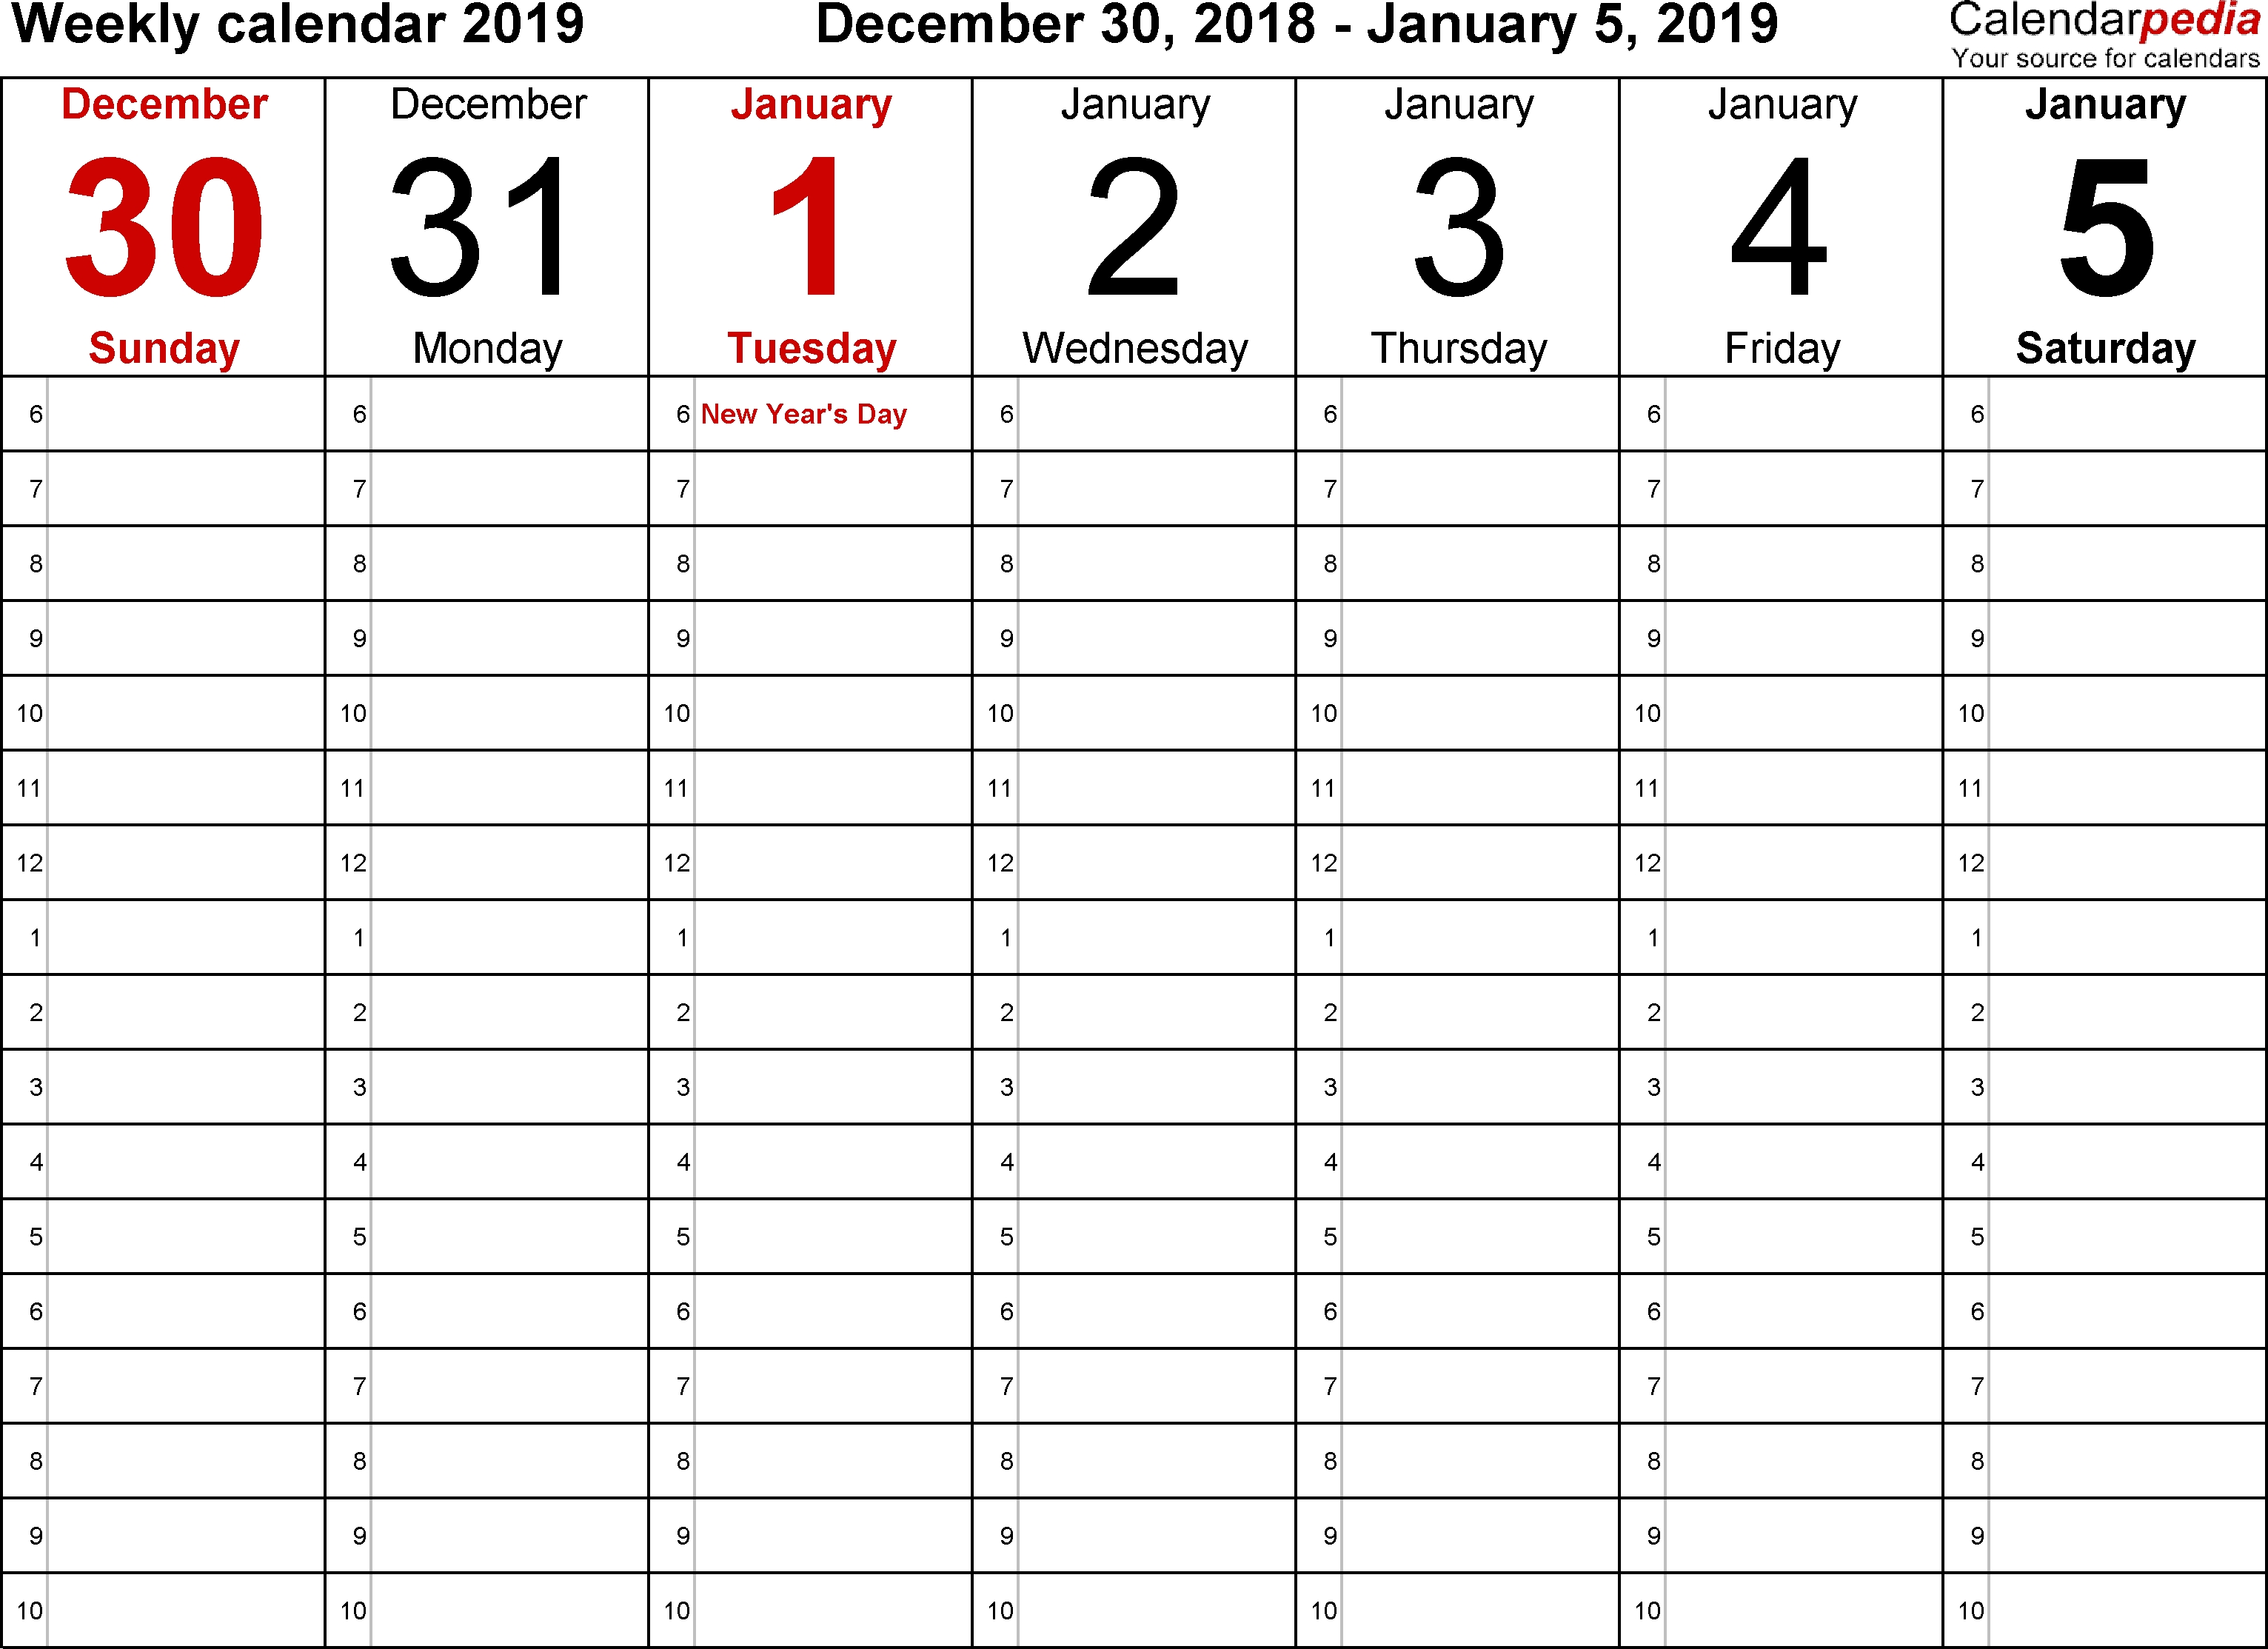 Weekly Calendar 2019 For Word - 12 Free Printable Templates Calendar Template 1 Week